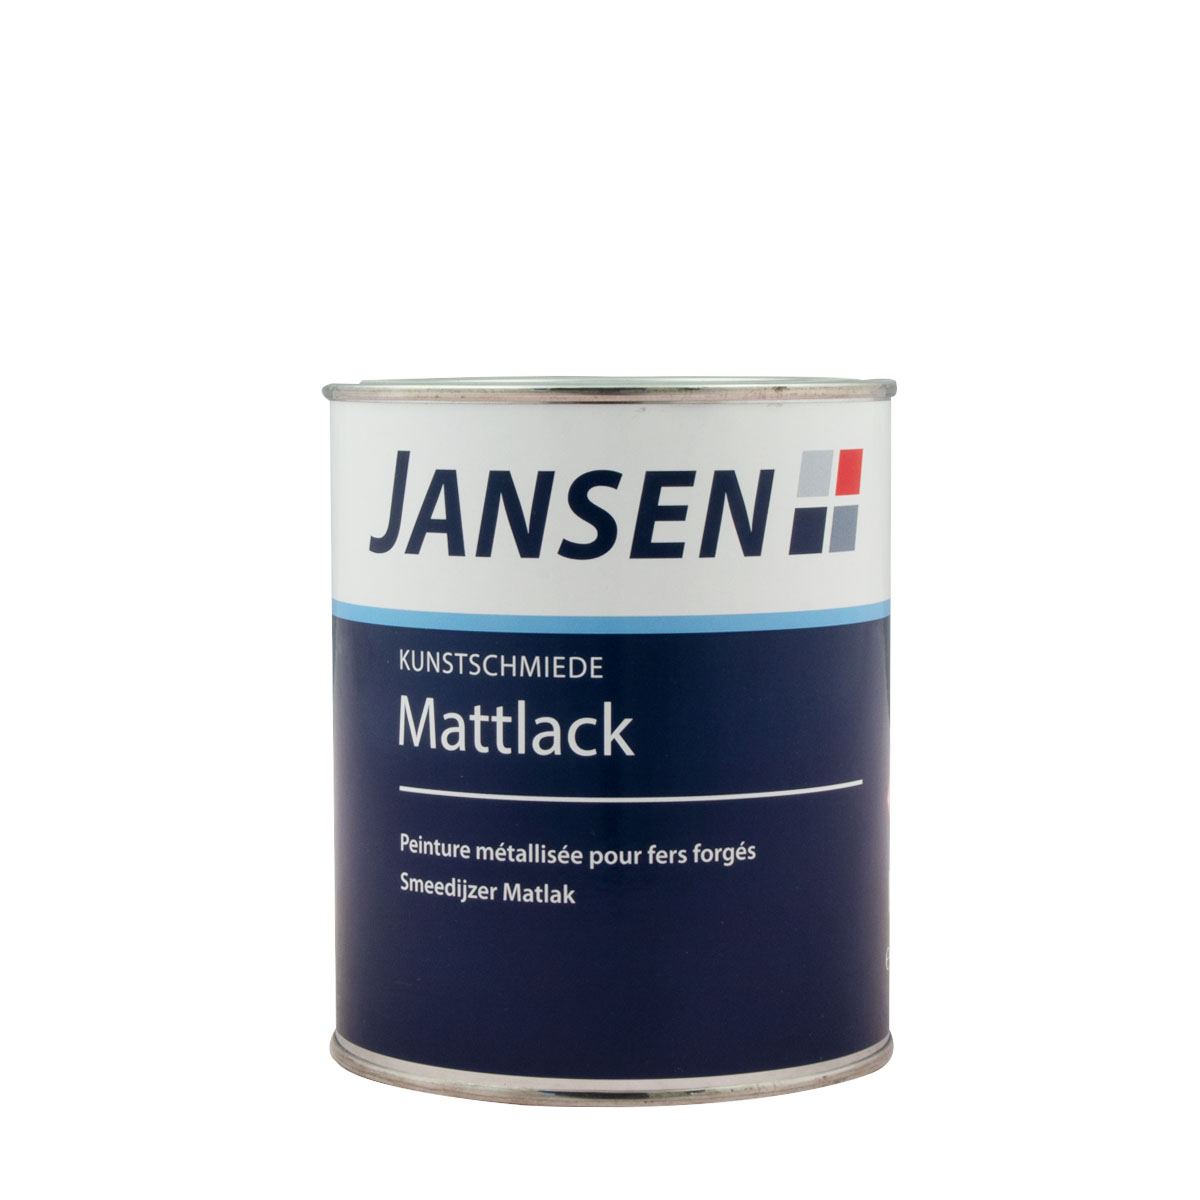 Jansen Kunstschmiede-Mattlack schwarz 750ml Kunstschmiedelack